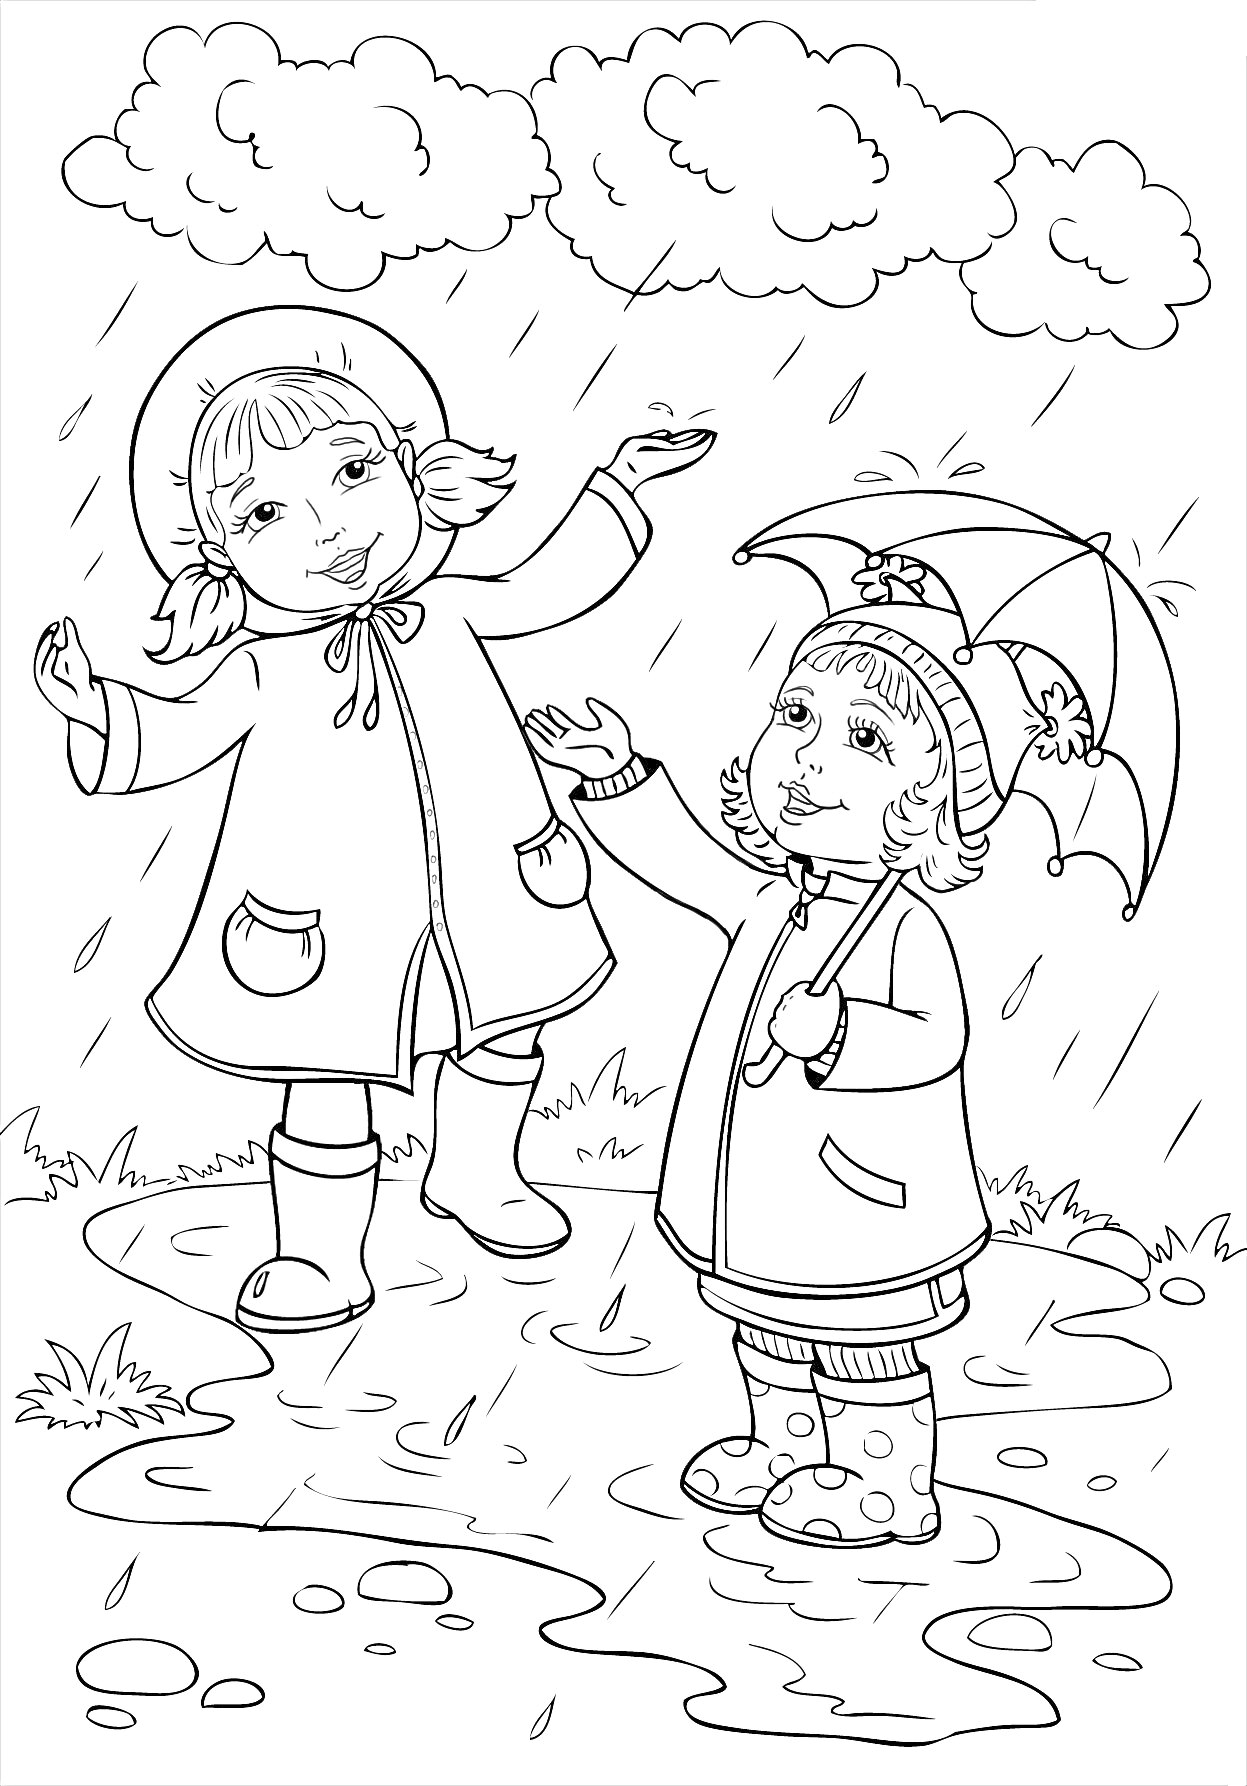 Раскраска Две девочки под дождем в дождевиках и резиновых сапогах на лужайке с лужами, одна из них держит зонтик, облака на небе